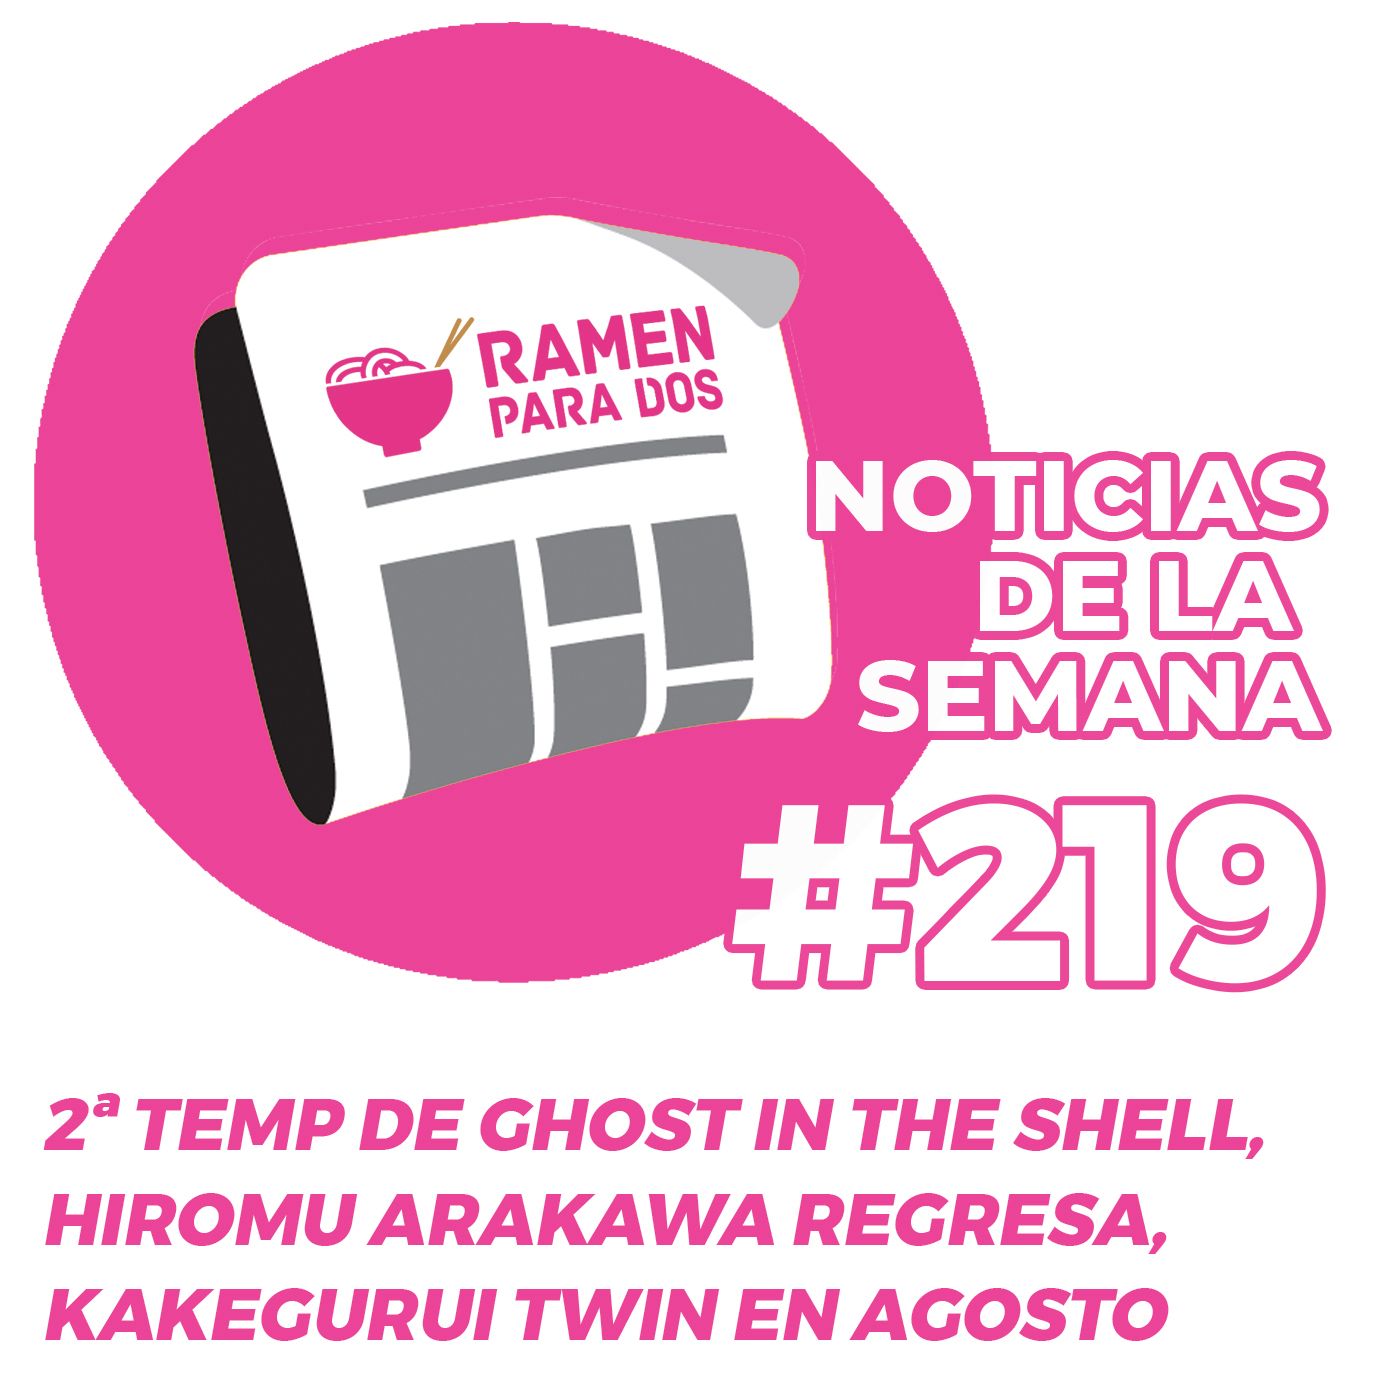 219. Segunda temporada temporada de Ghost in the Shell, nuevas licencias de Arechi